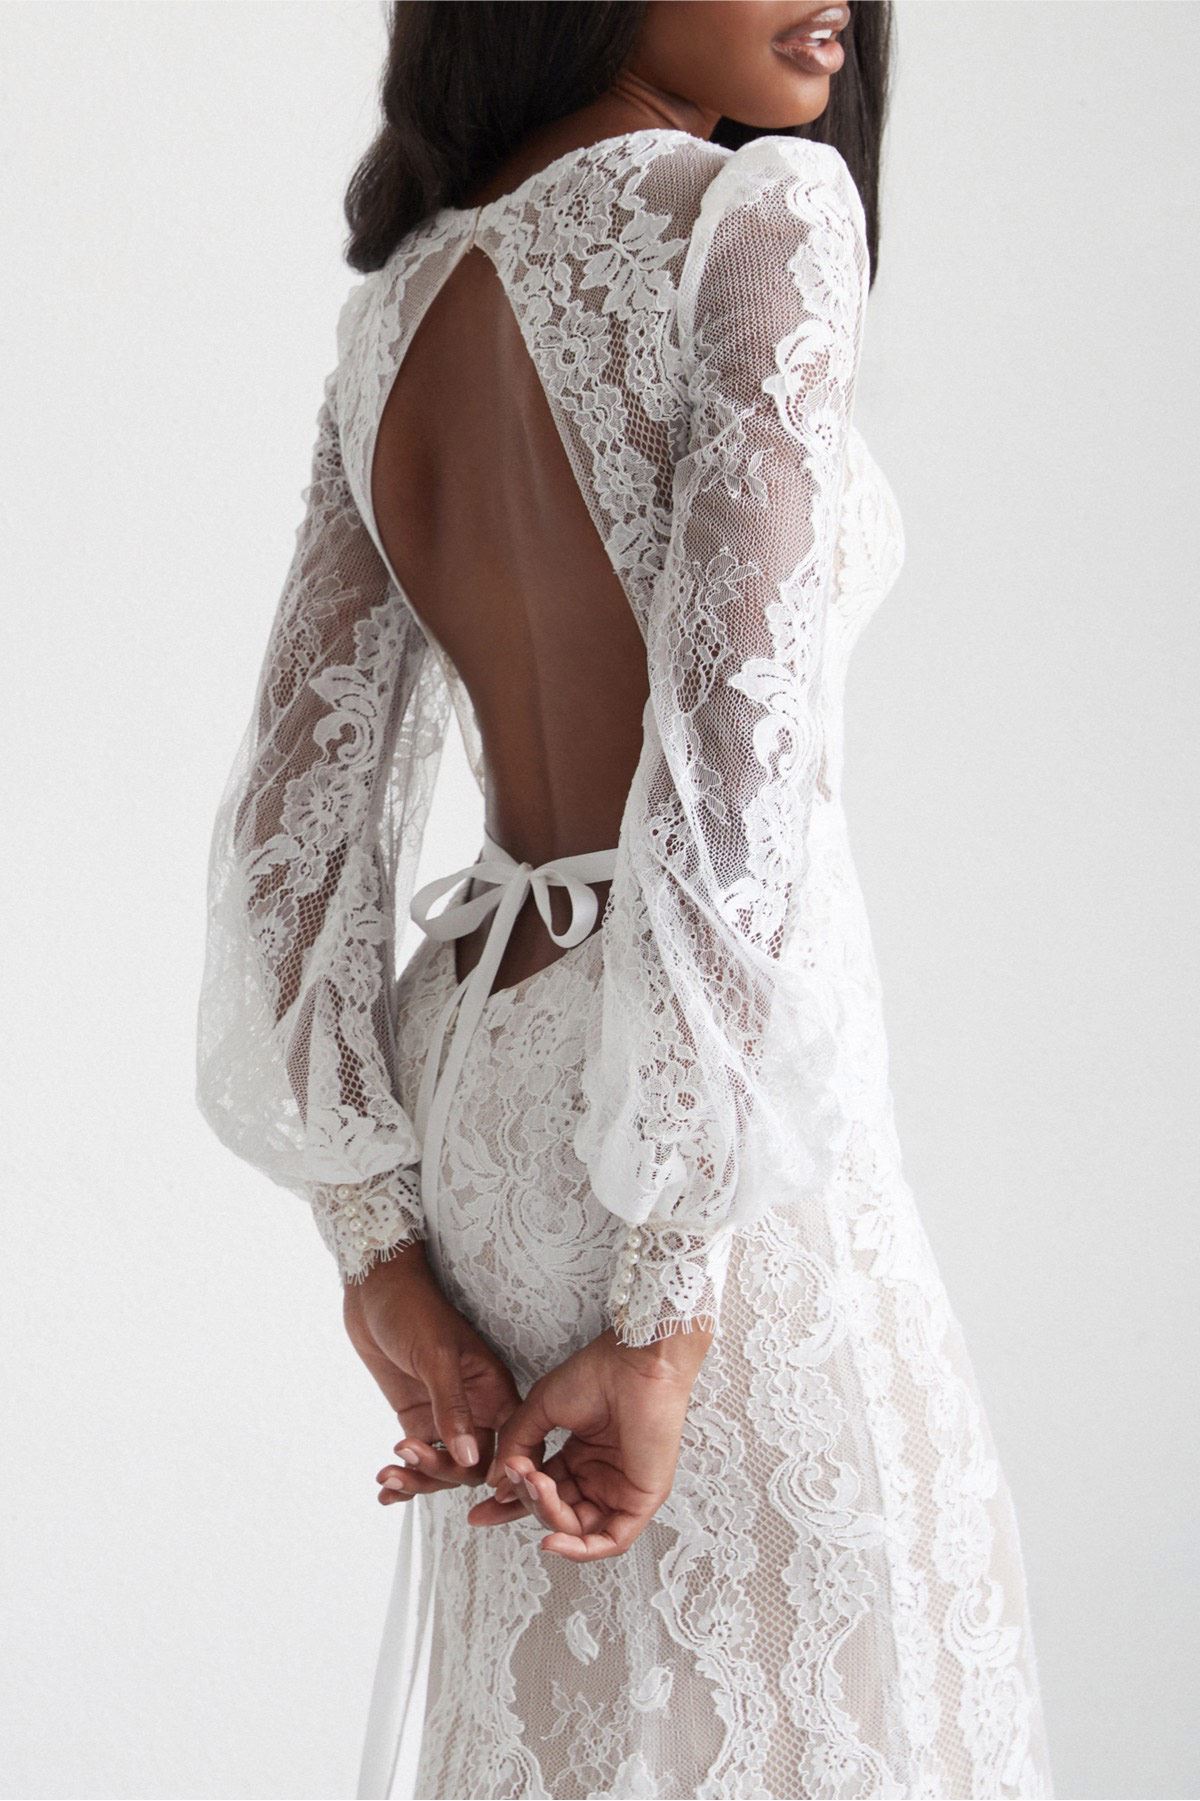 Model wearing white dress by Watters